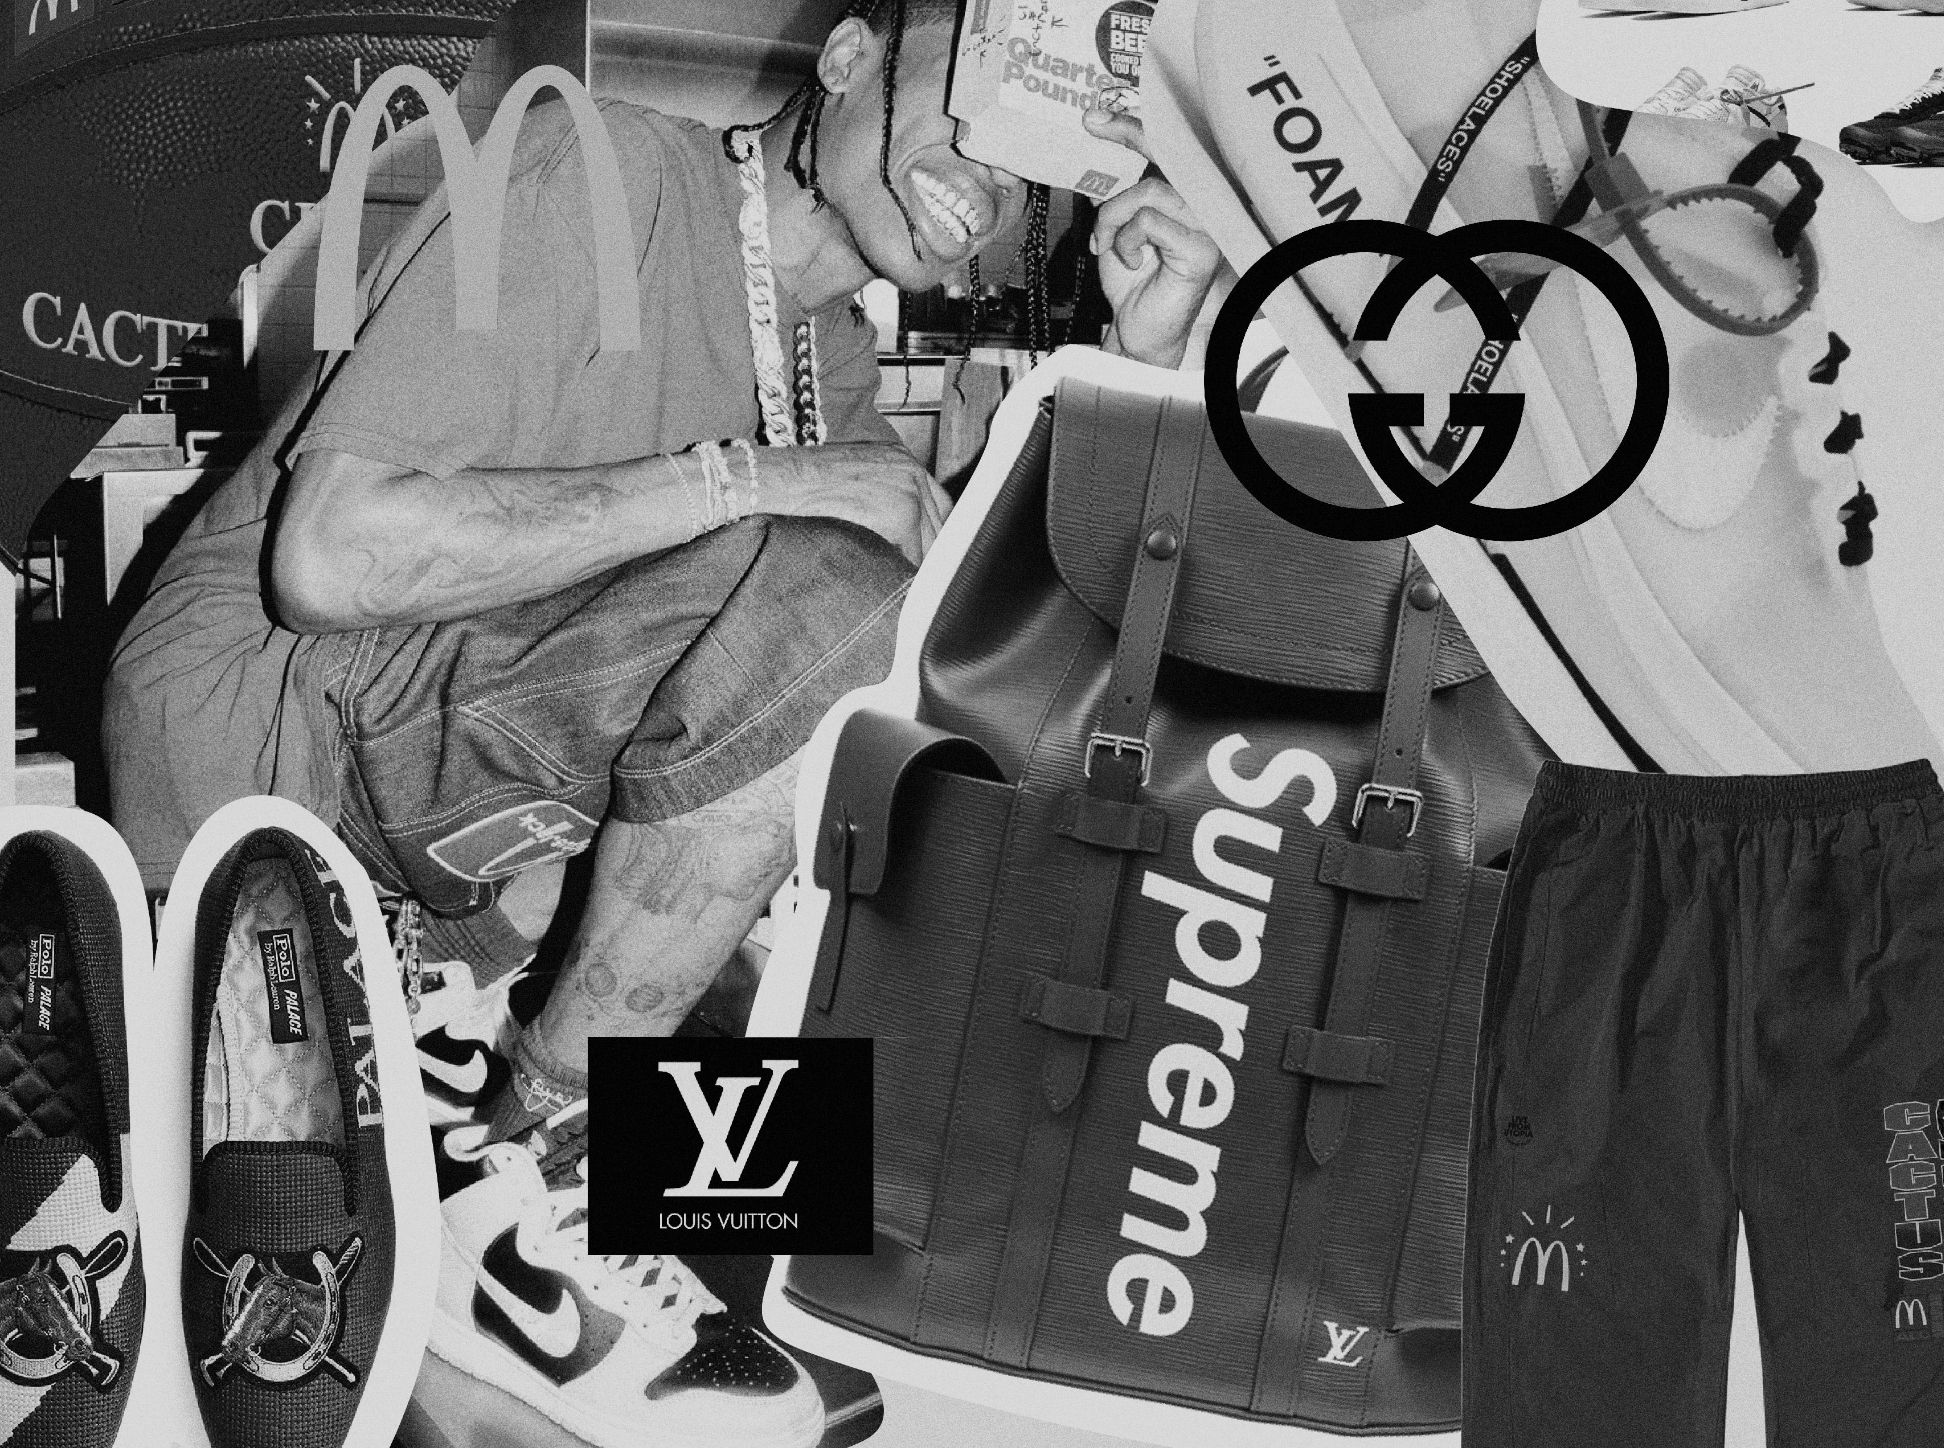 Louis Vuitton x Supreme: The surprise collaboration